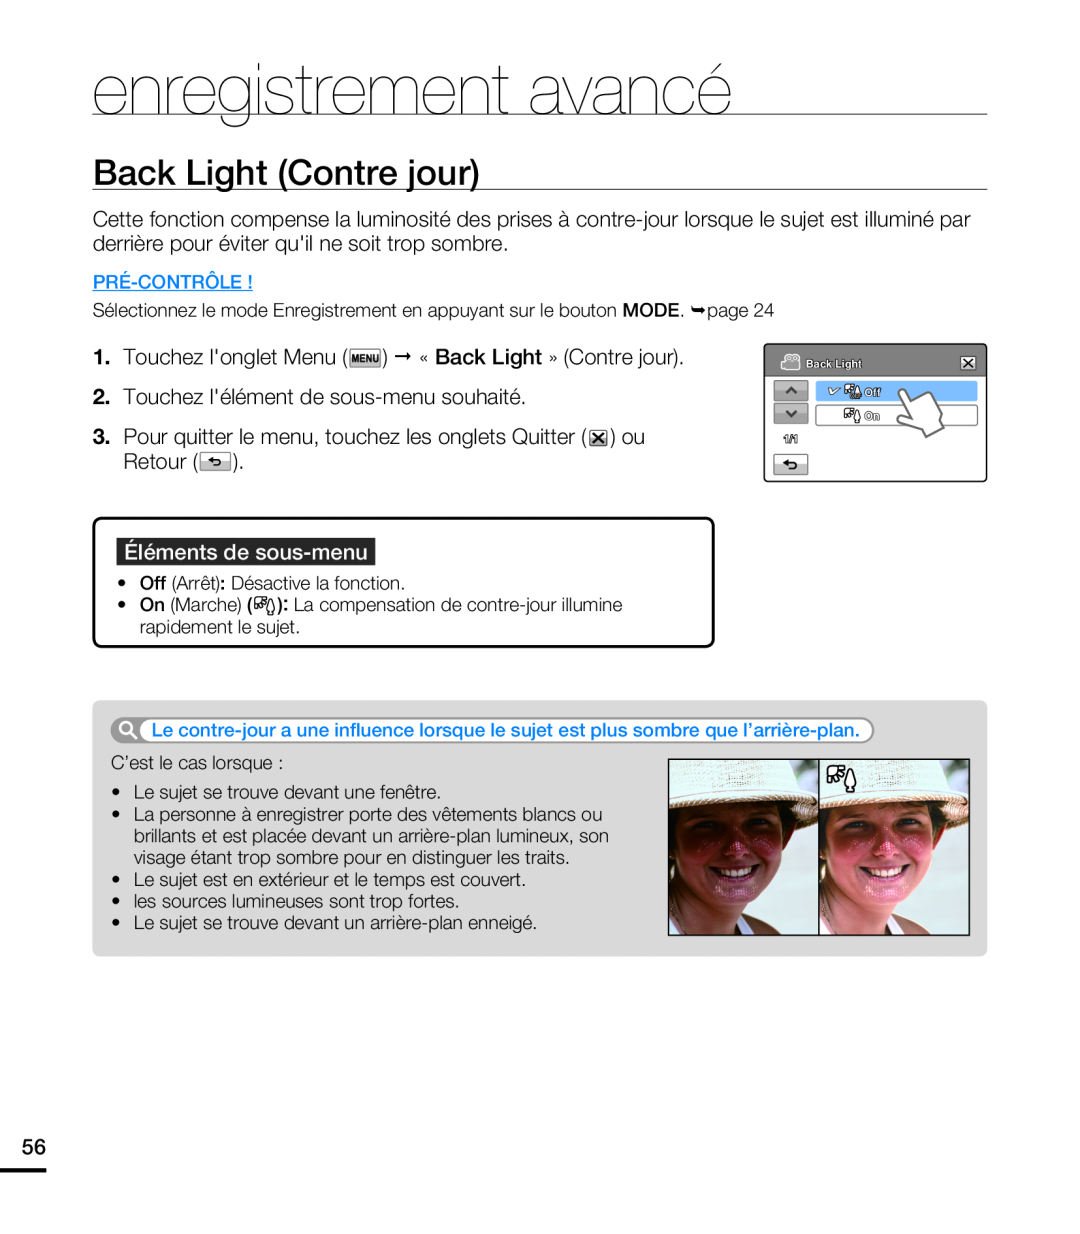 Samsung HMX-T10WP/XEU manual Back Light Contre jour, enregistrement avancé, Éléments de sous-menu, Pré-Contrôle, OFF Off 